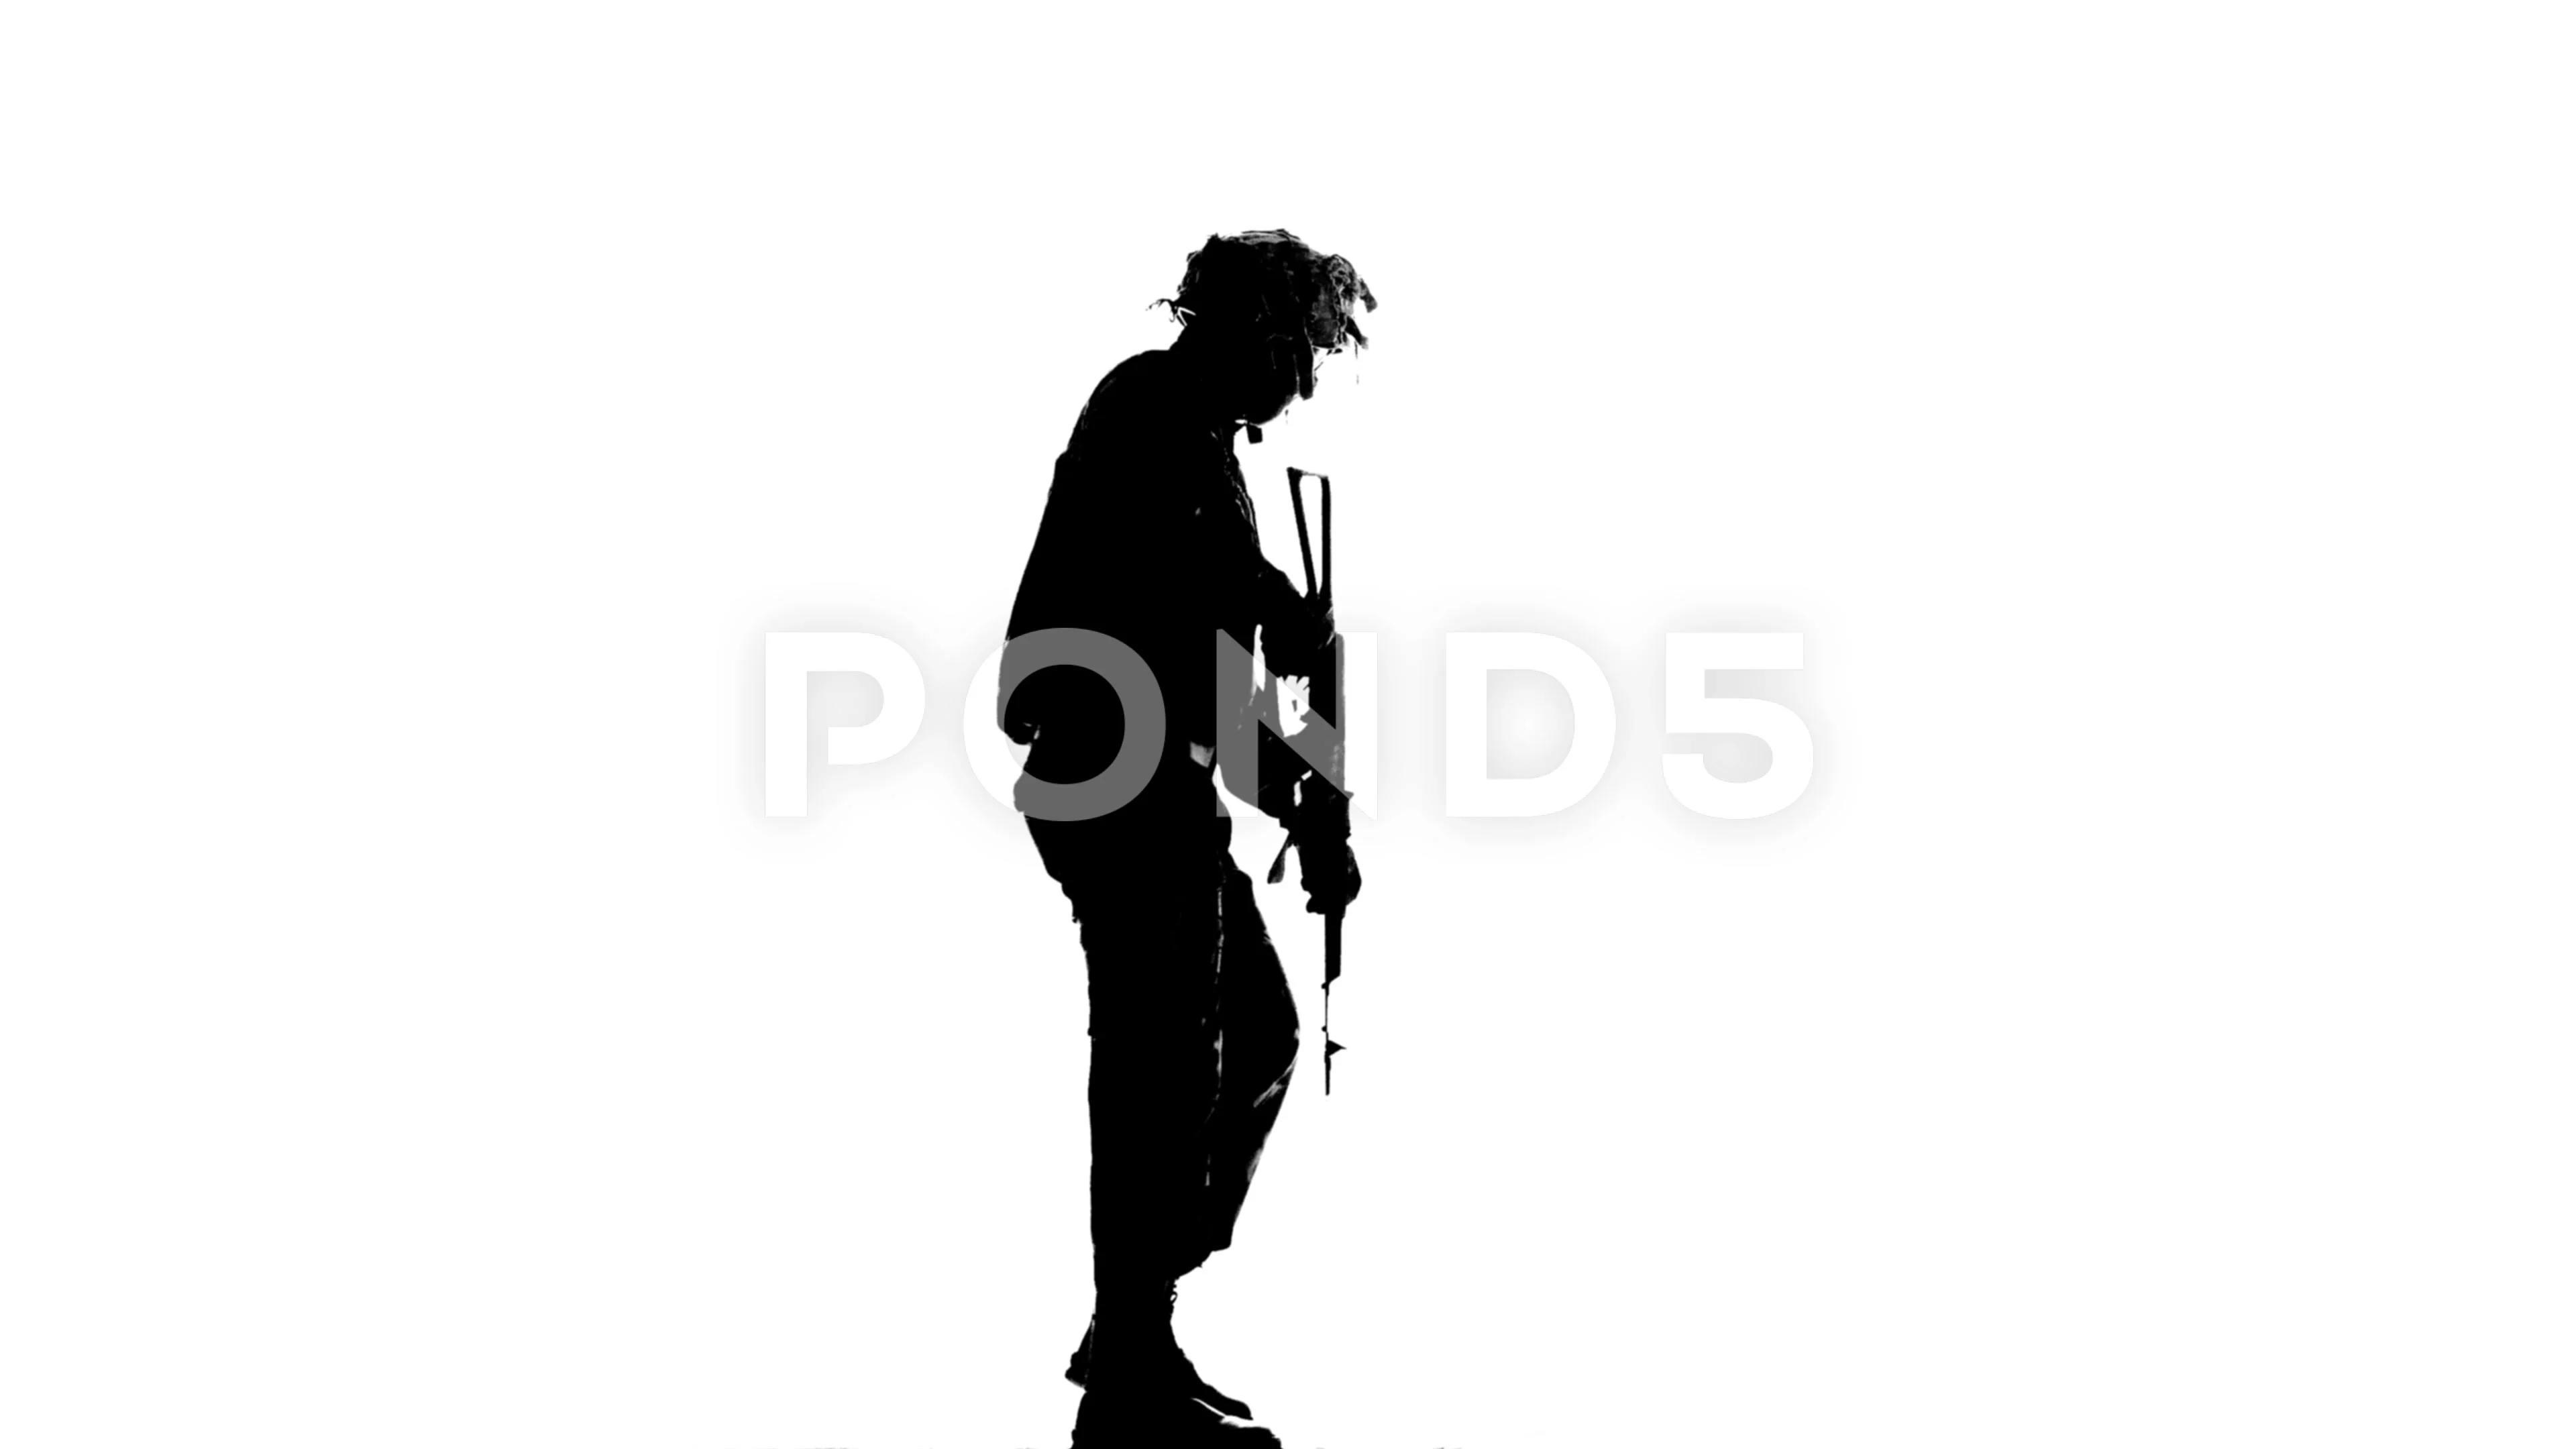 man walking with gun silhouette